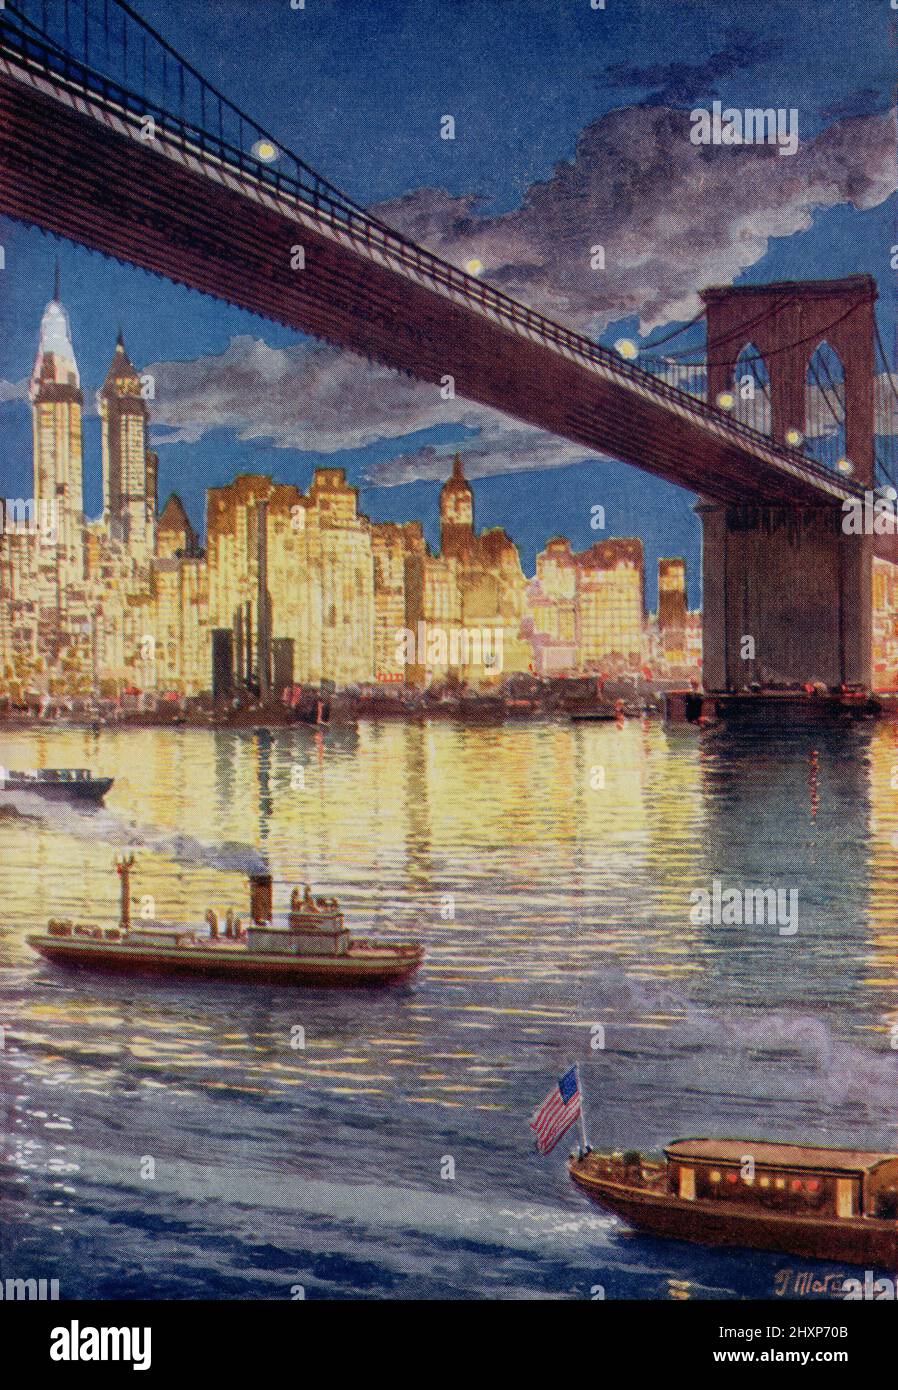 Los rascacielos de Nueva York, América, vistos debajo del Puente de Brooklyn. Del País de las Maravillas del Conocimiento, publicado c.1930 Foto de stock